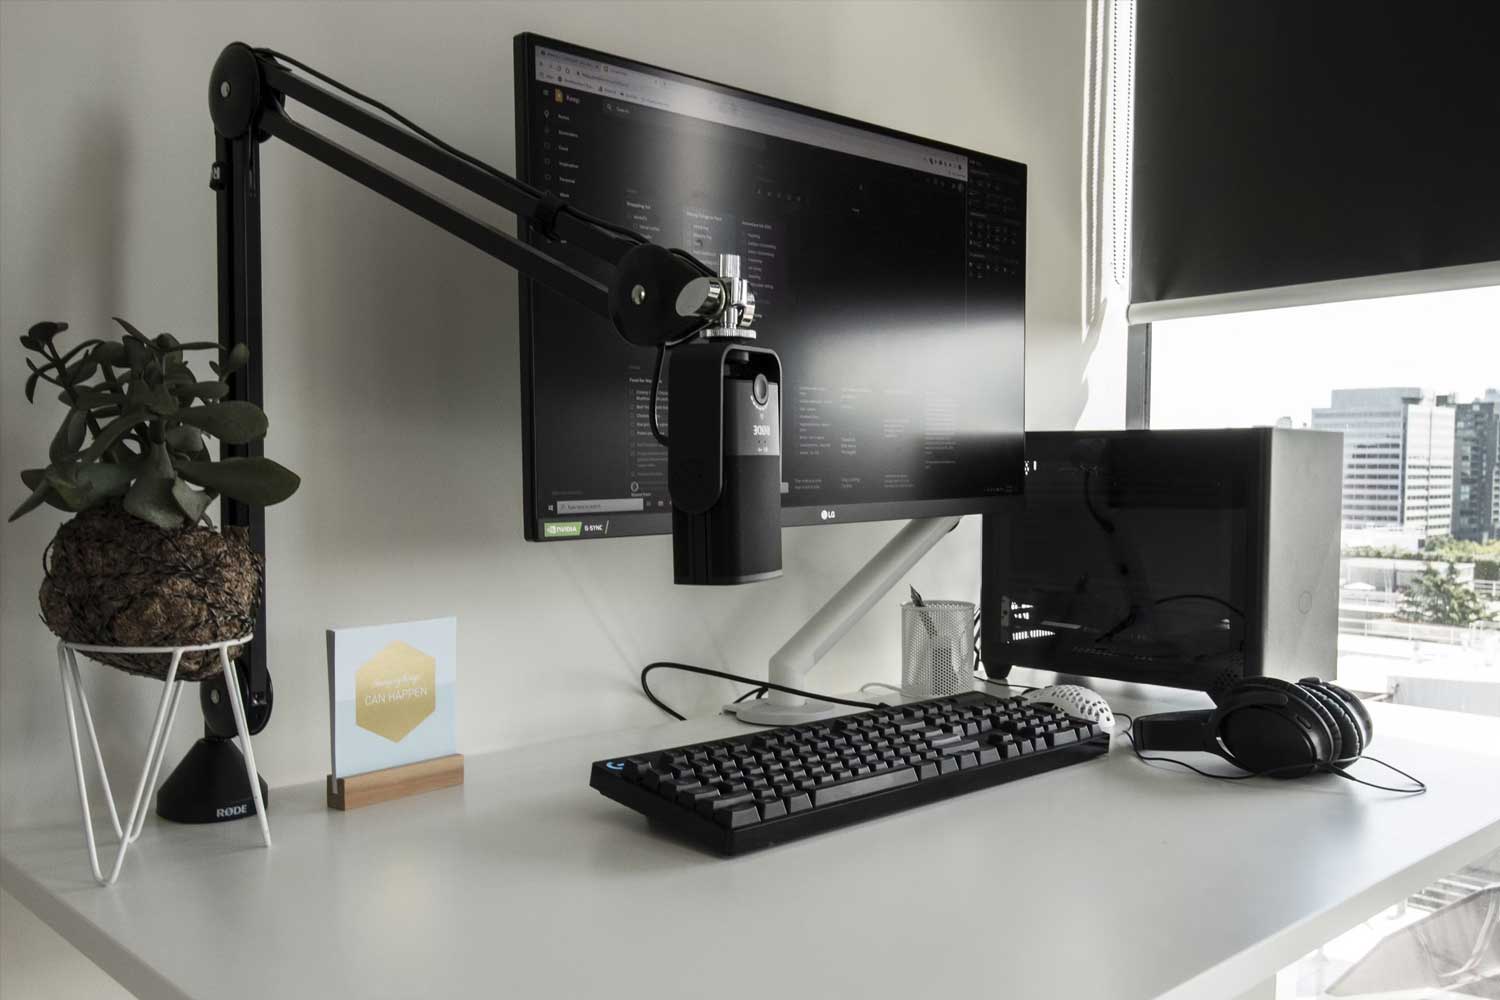 Clean minimalist desk setup.